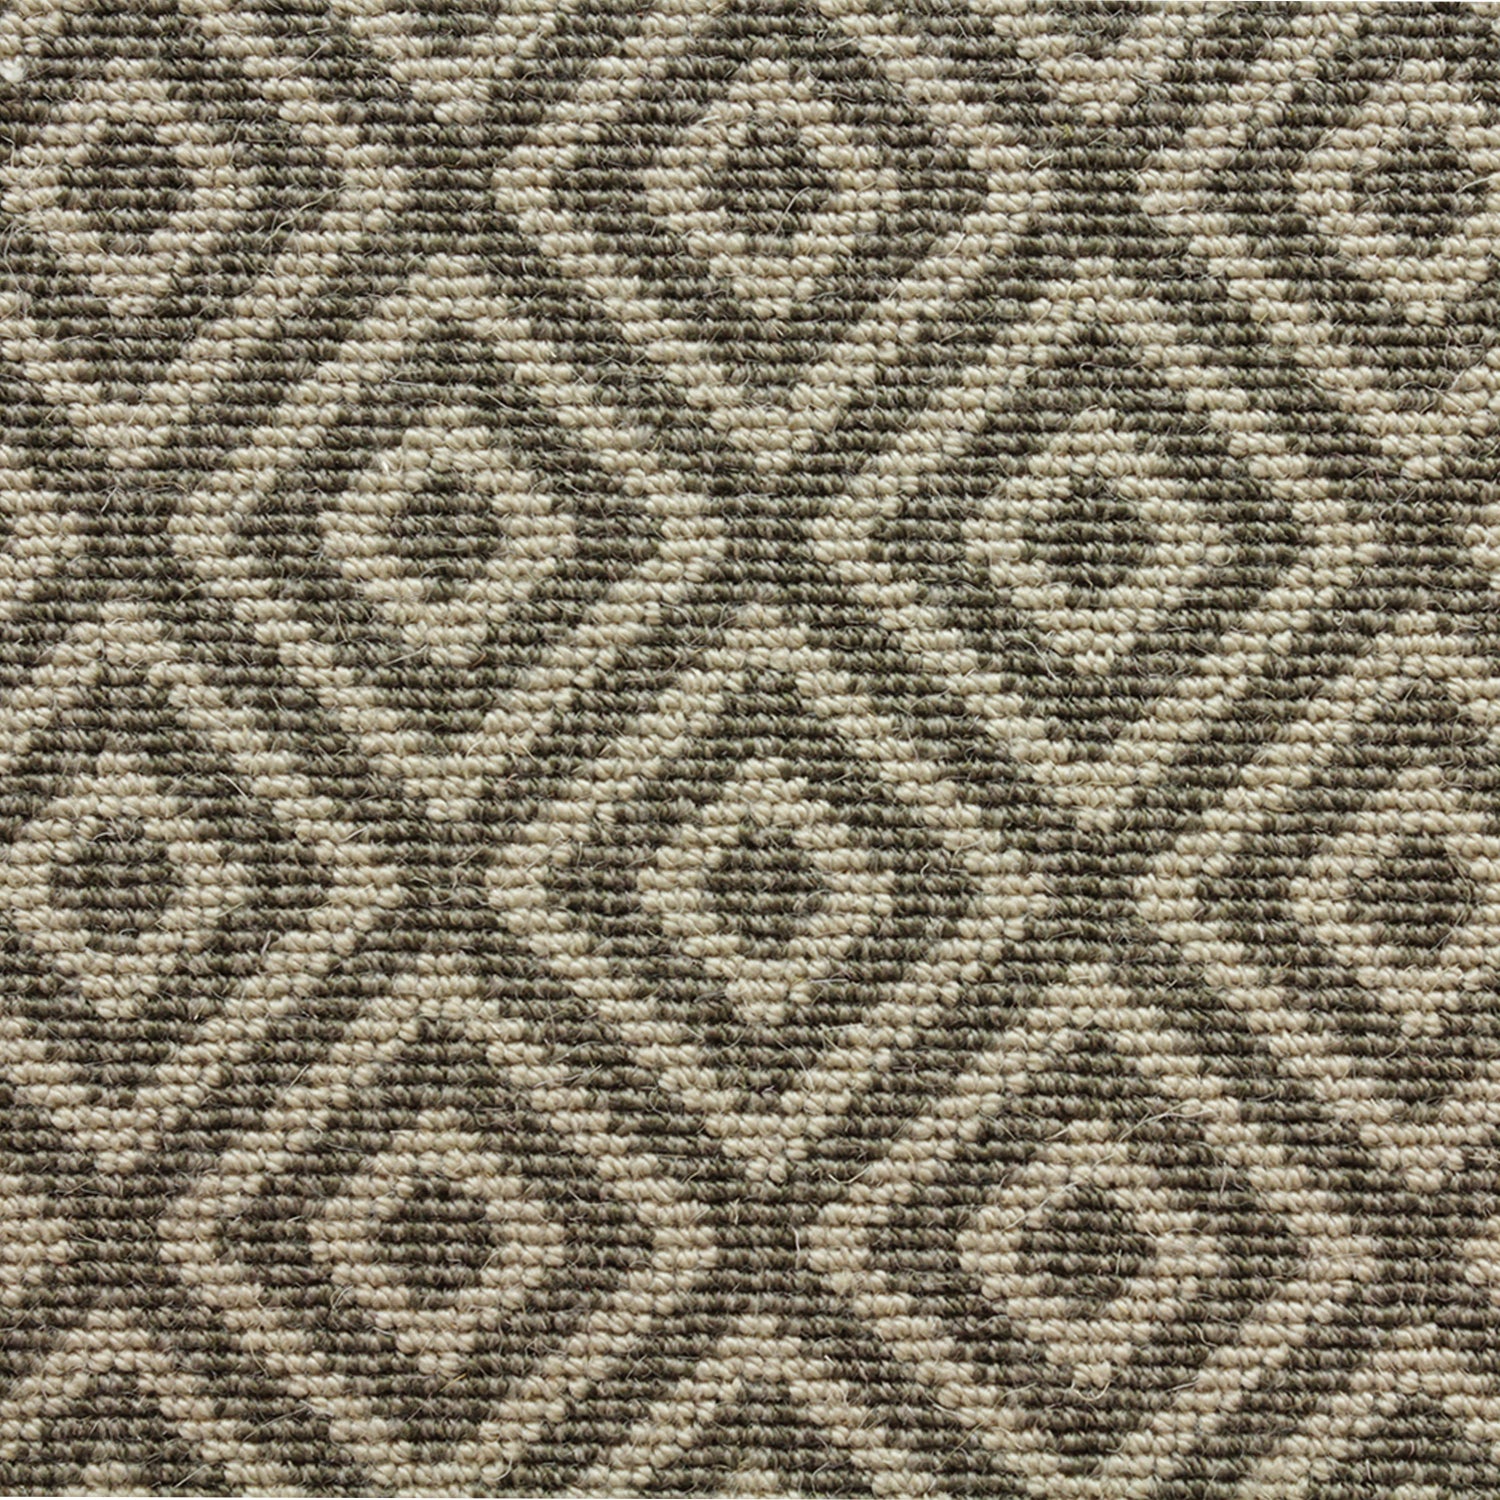 Wool-blend broadloom carpet swatch in a repeating diamond print in dark brown on a tan field.